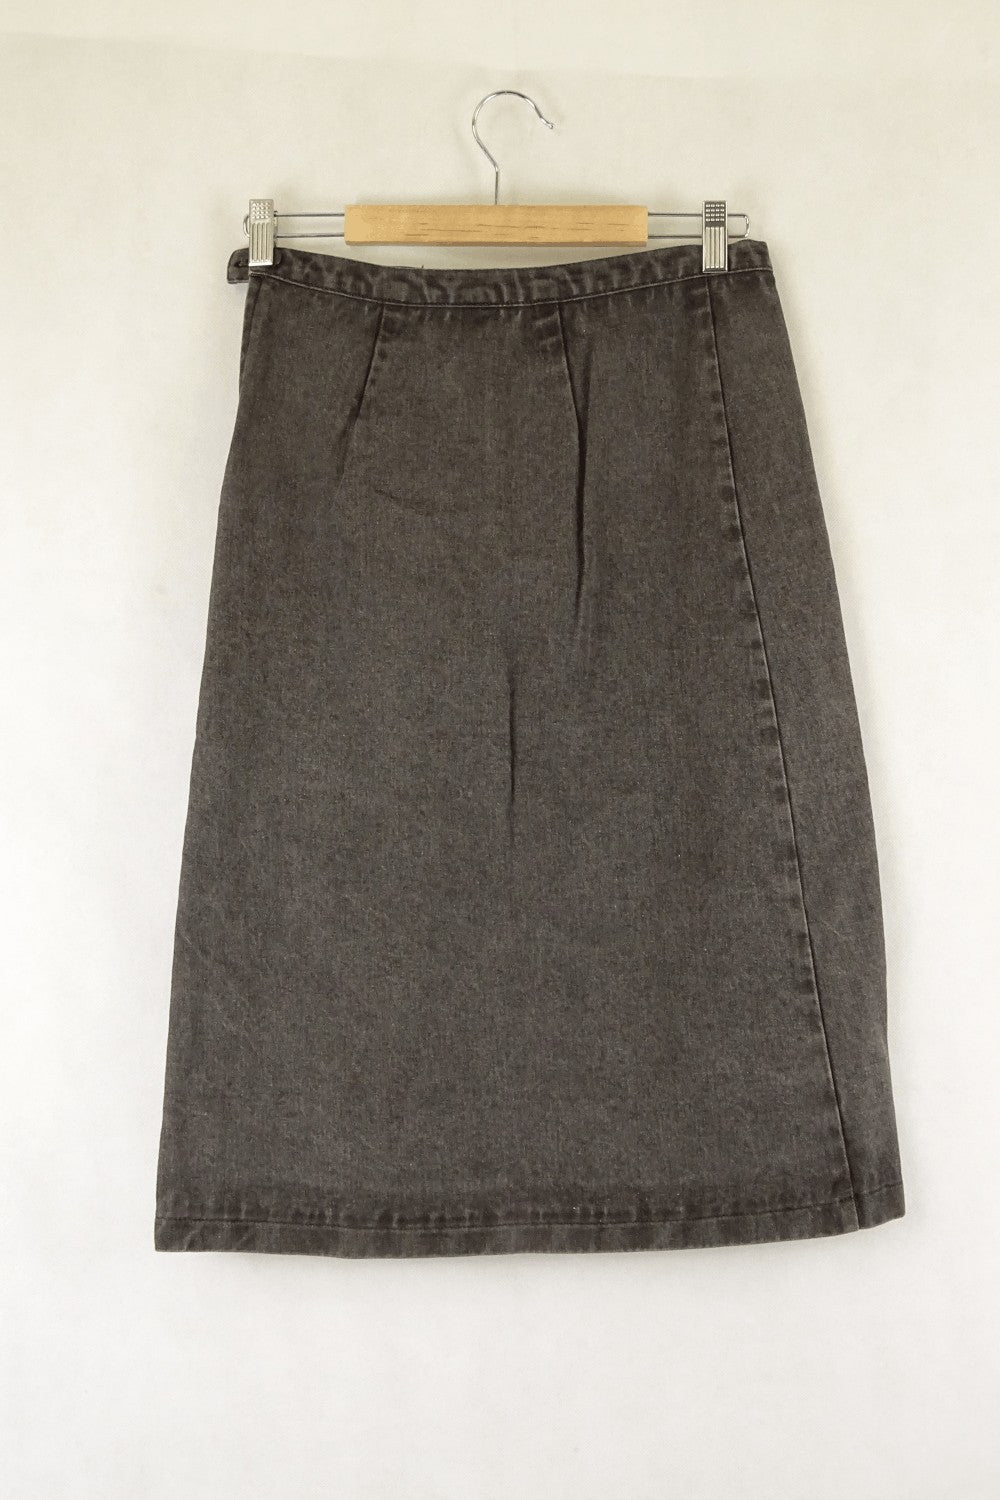 Jenny Hellstrom Grey Denim Skirt 6